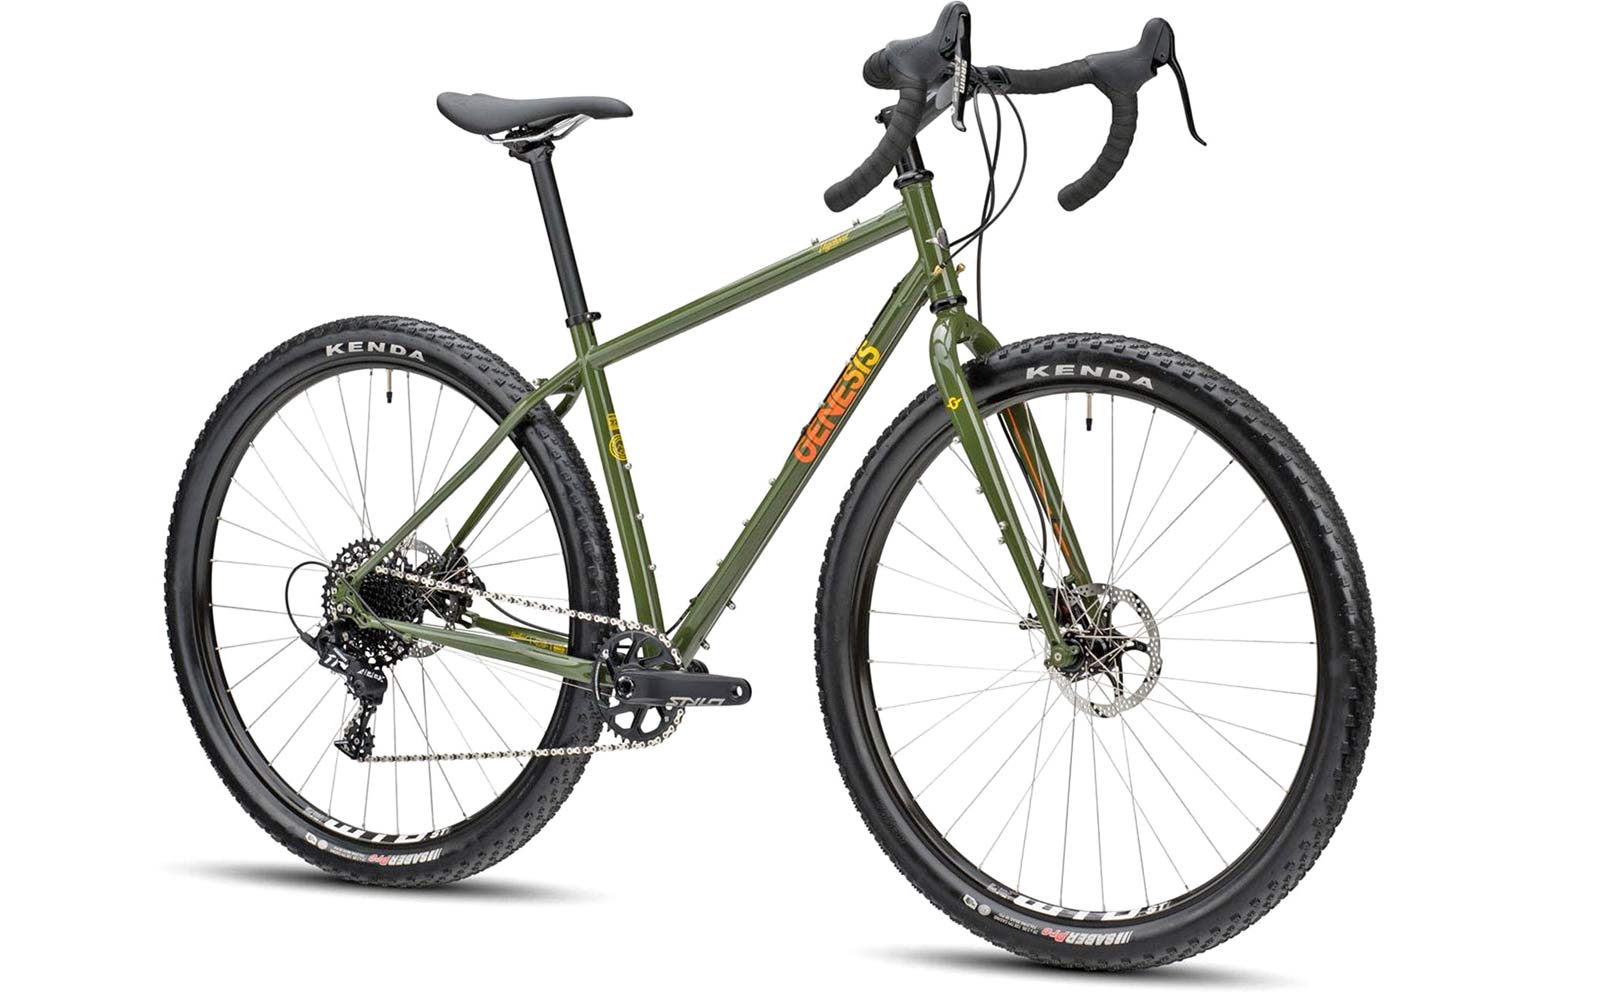 2021 Genesis Vagabond steel monstercross bike, Reynolds 725 steel adventure bikepacking gravel mountain bike, 